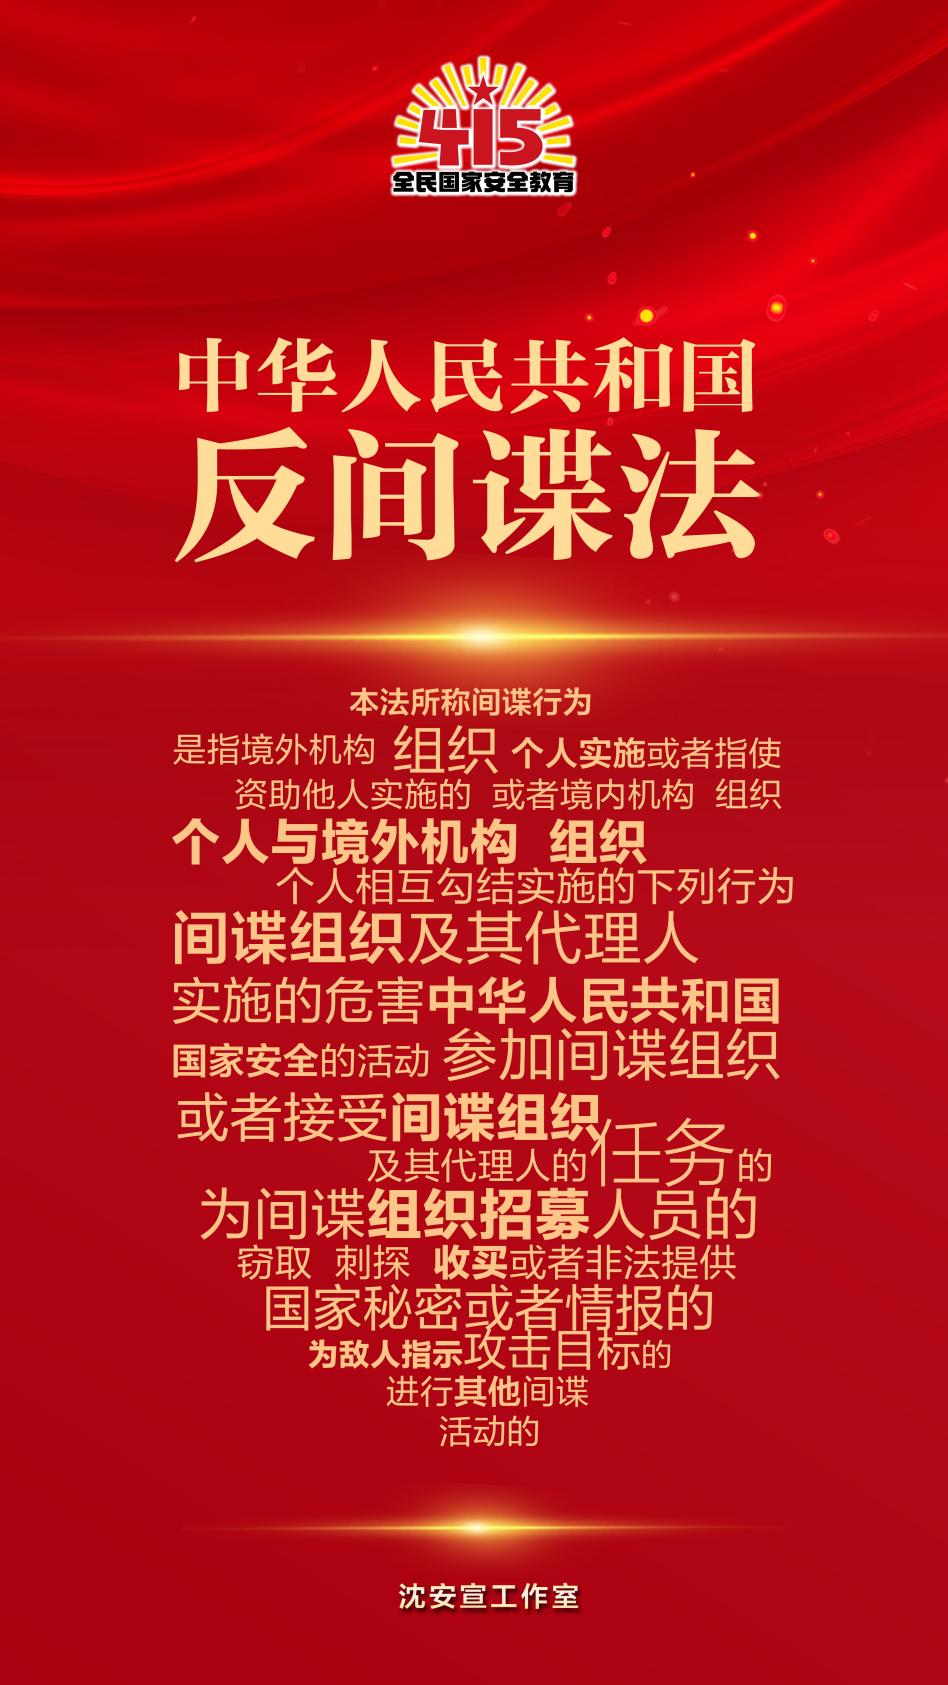 《中华人民共和国反间谍法》由中华人民共和国第十二届全国人民代表